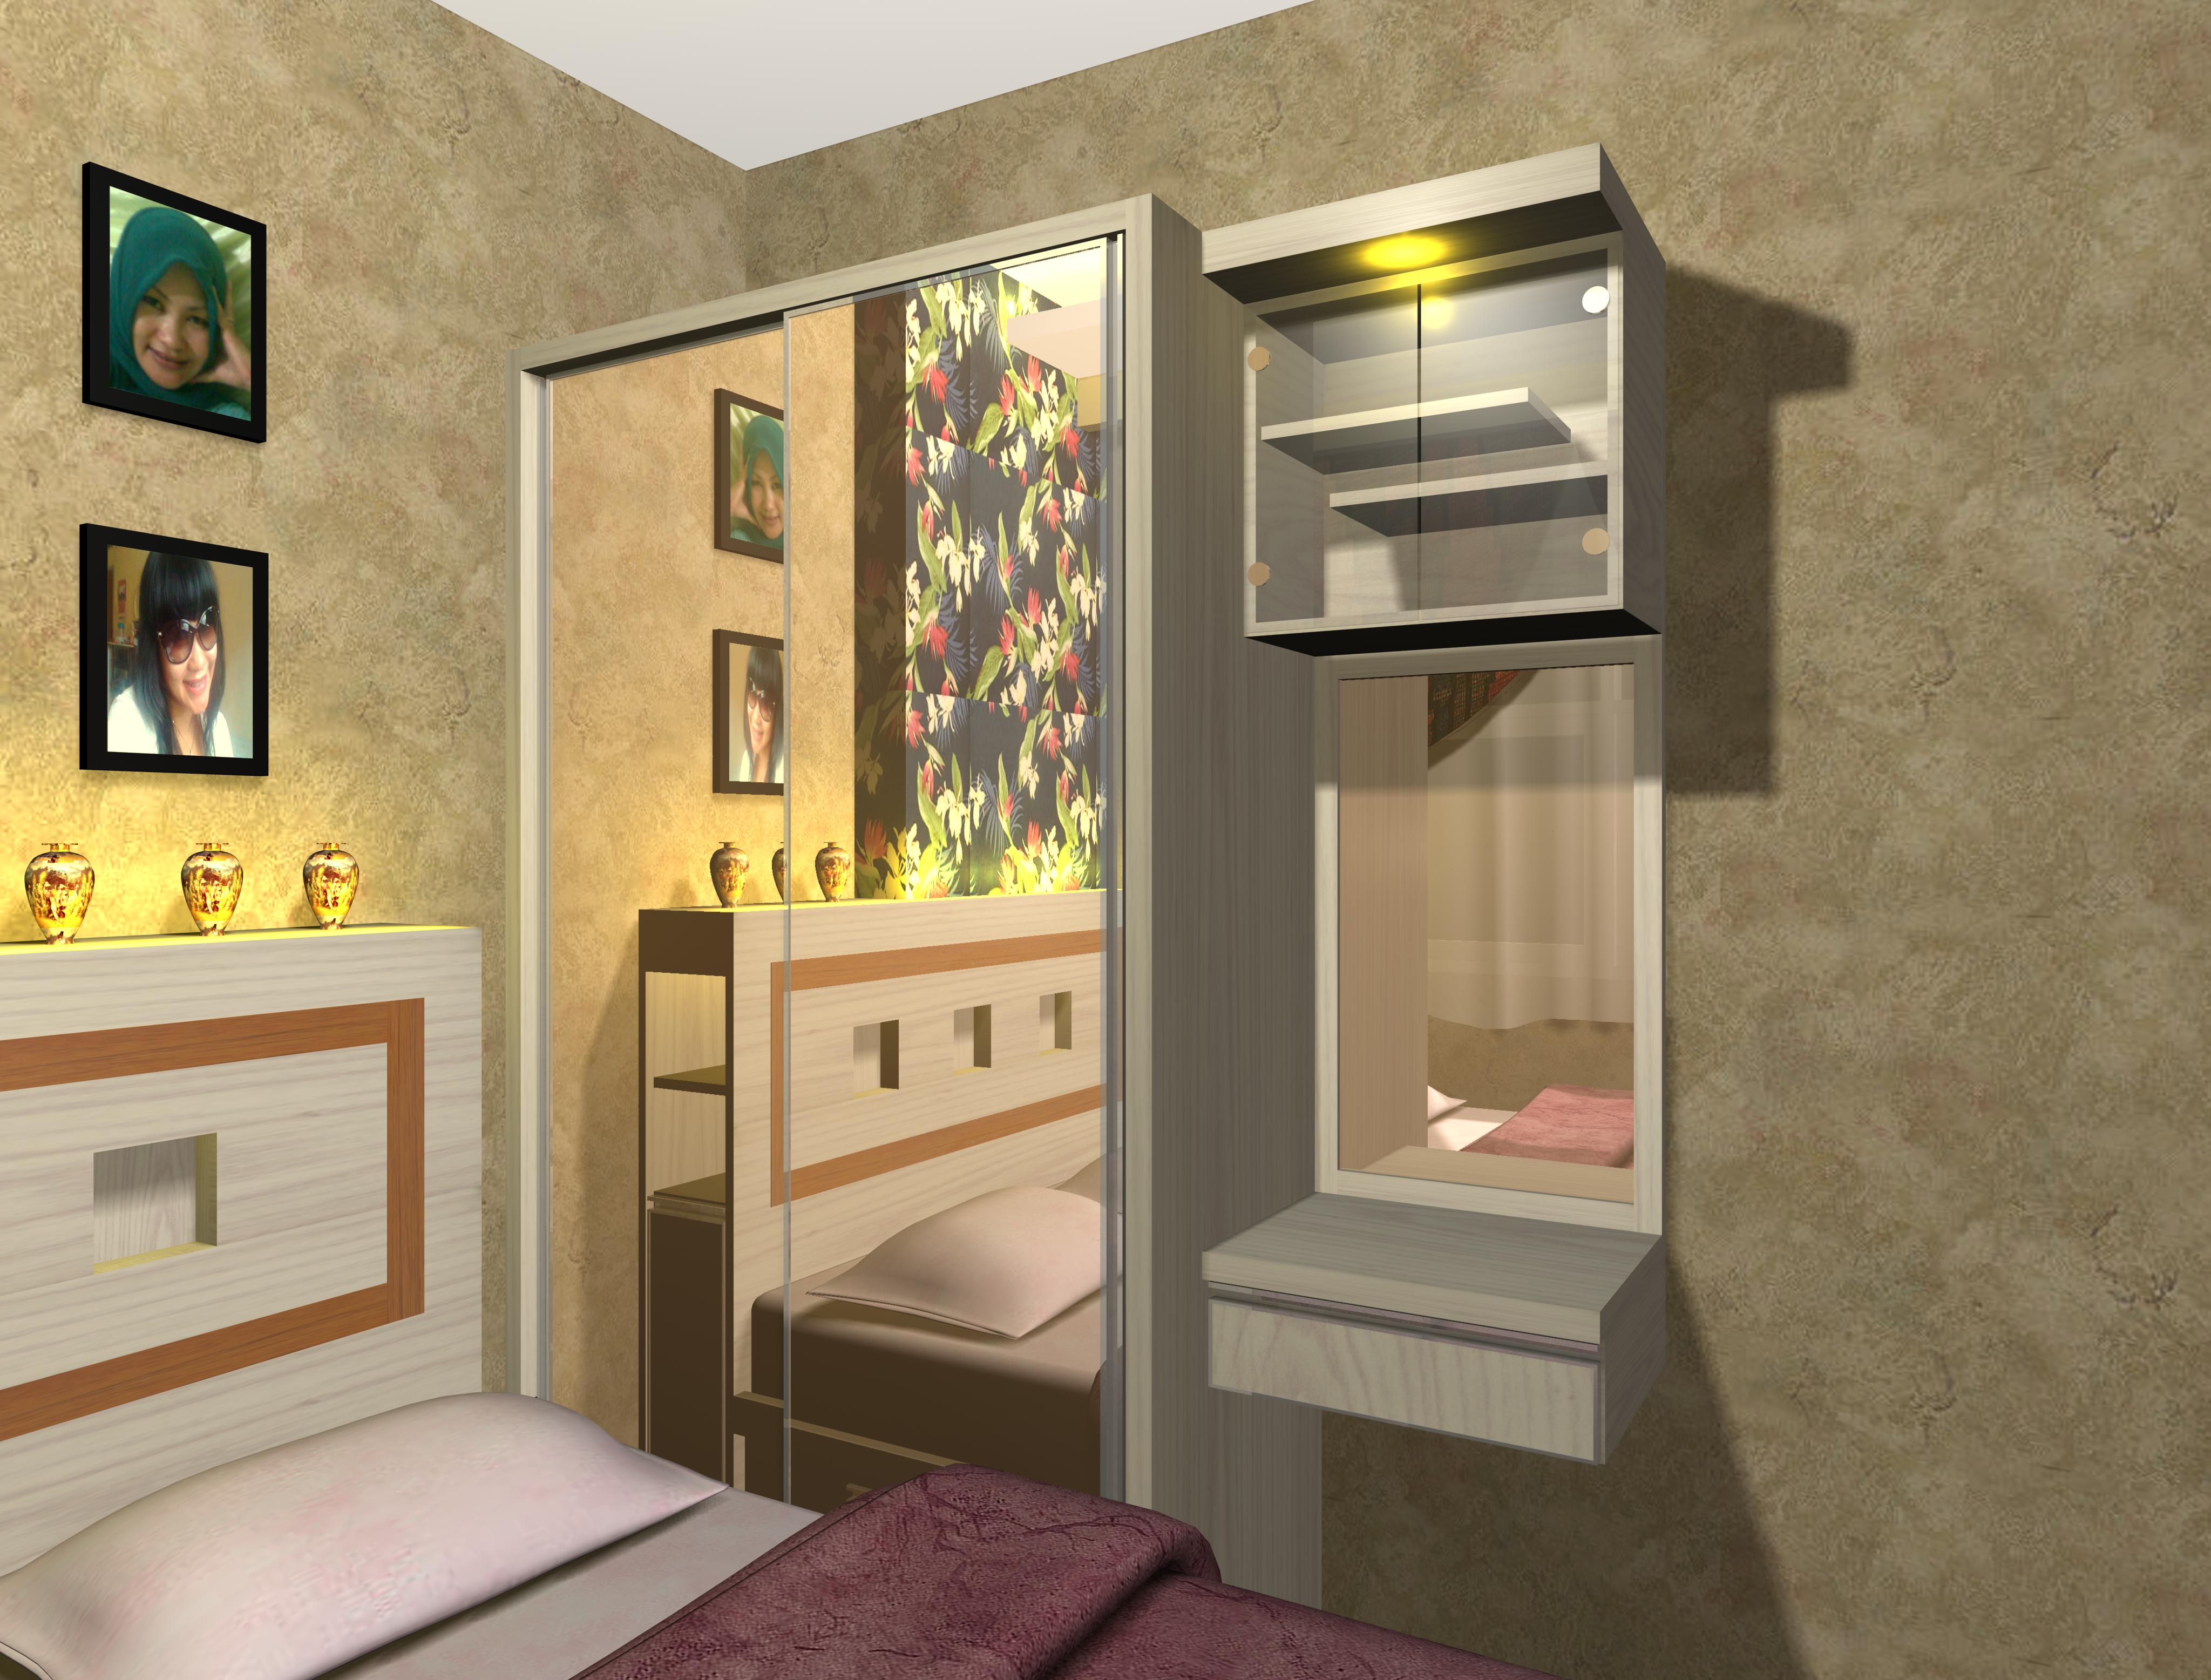 Desain Interior Apartemen Tipe Studio Model Rumah Idaman Terbaru